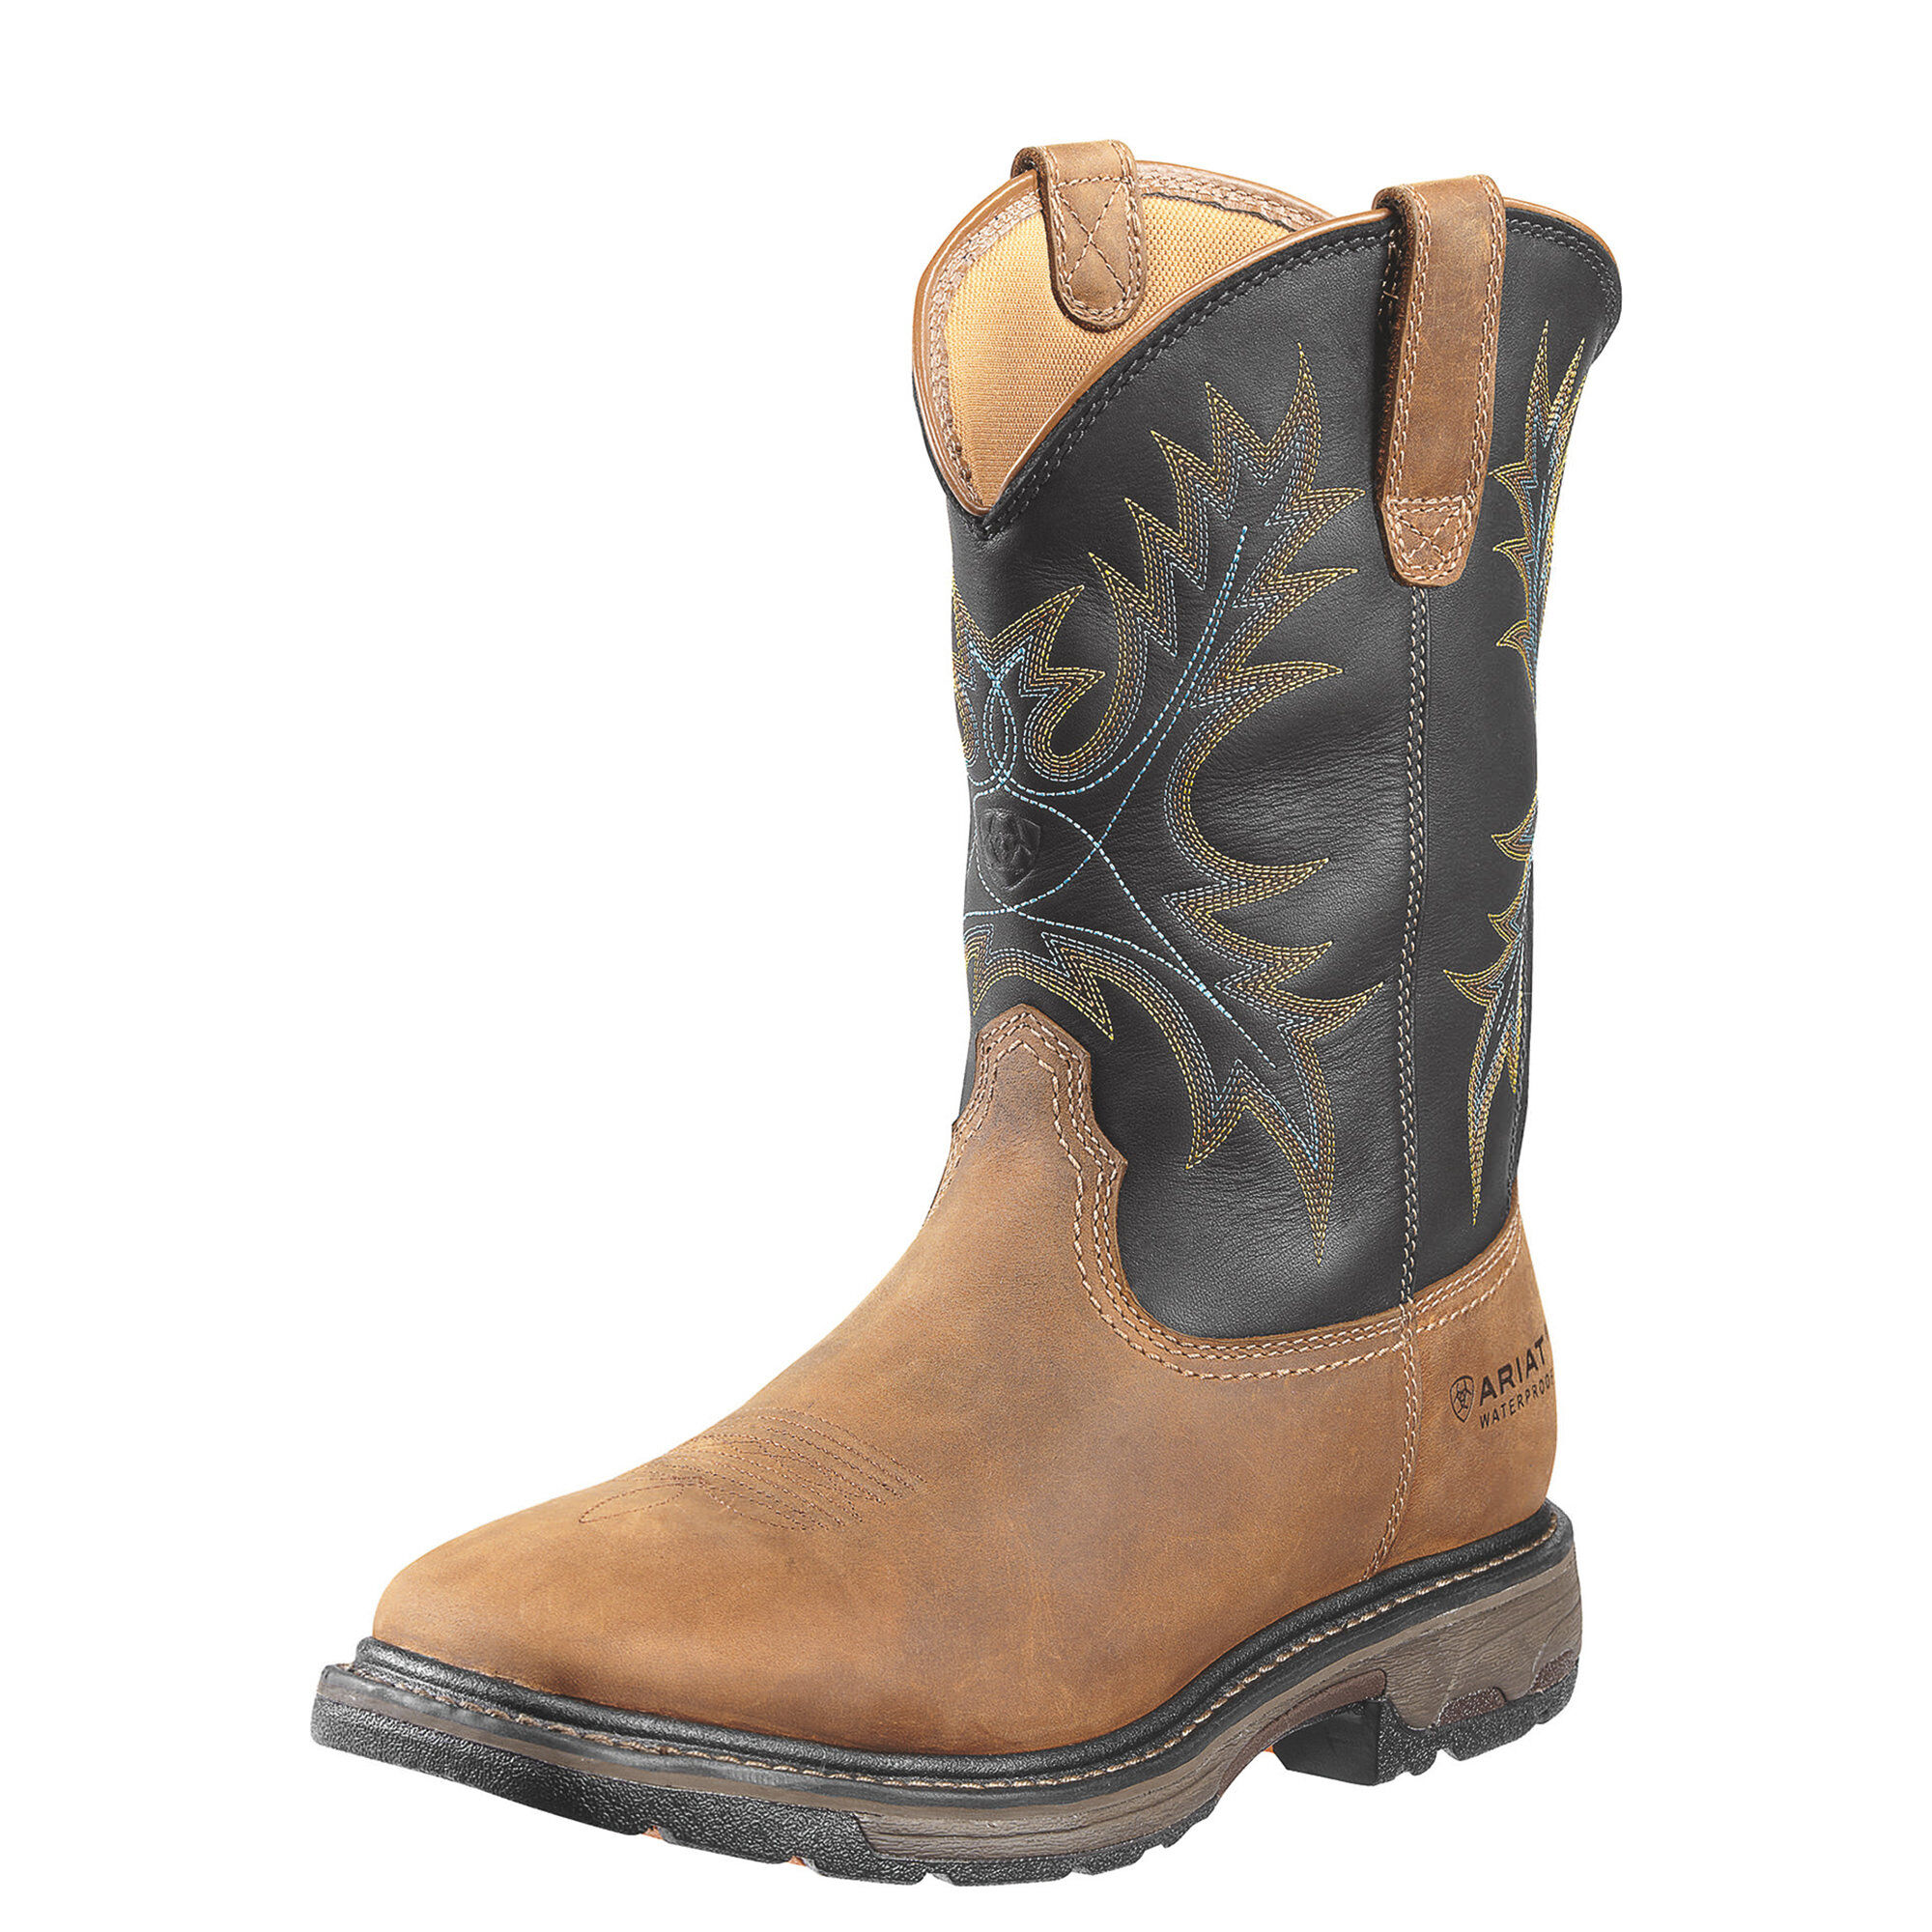 steel toe waterproof boots near me